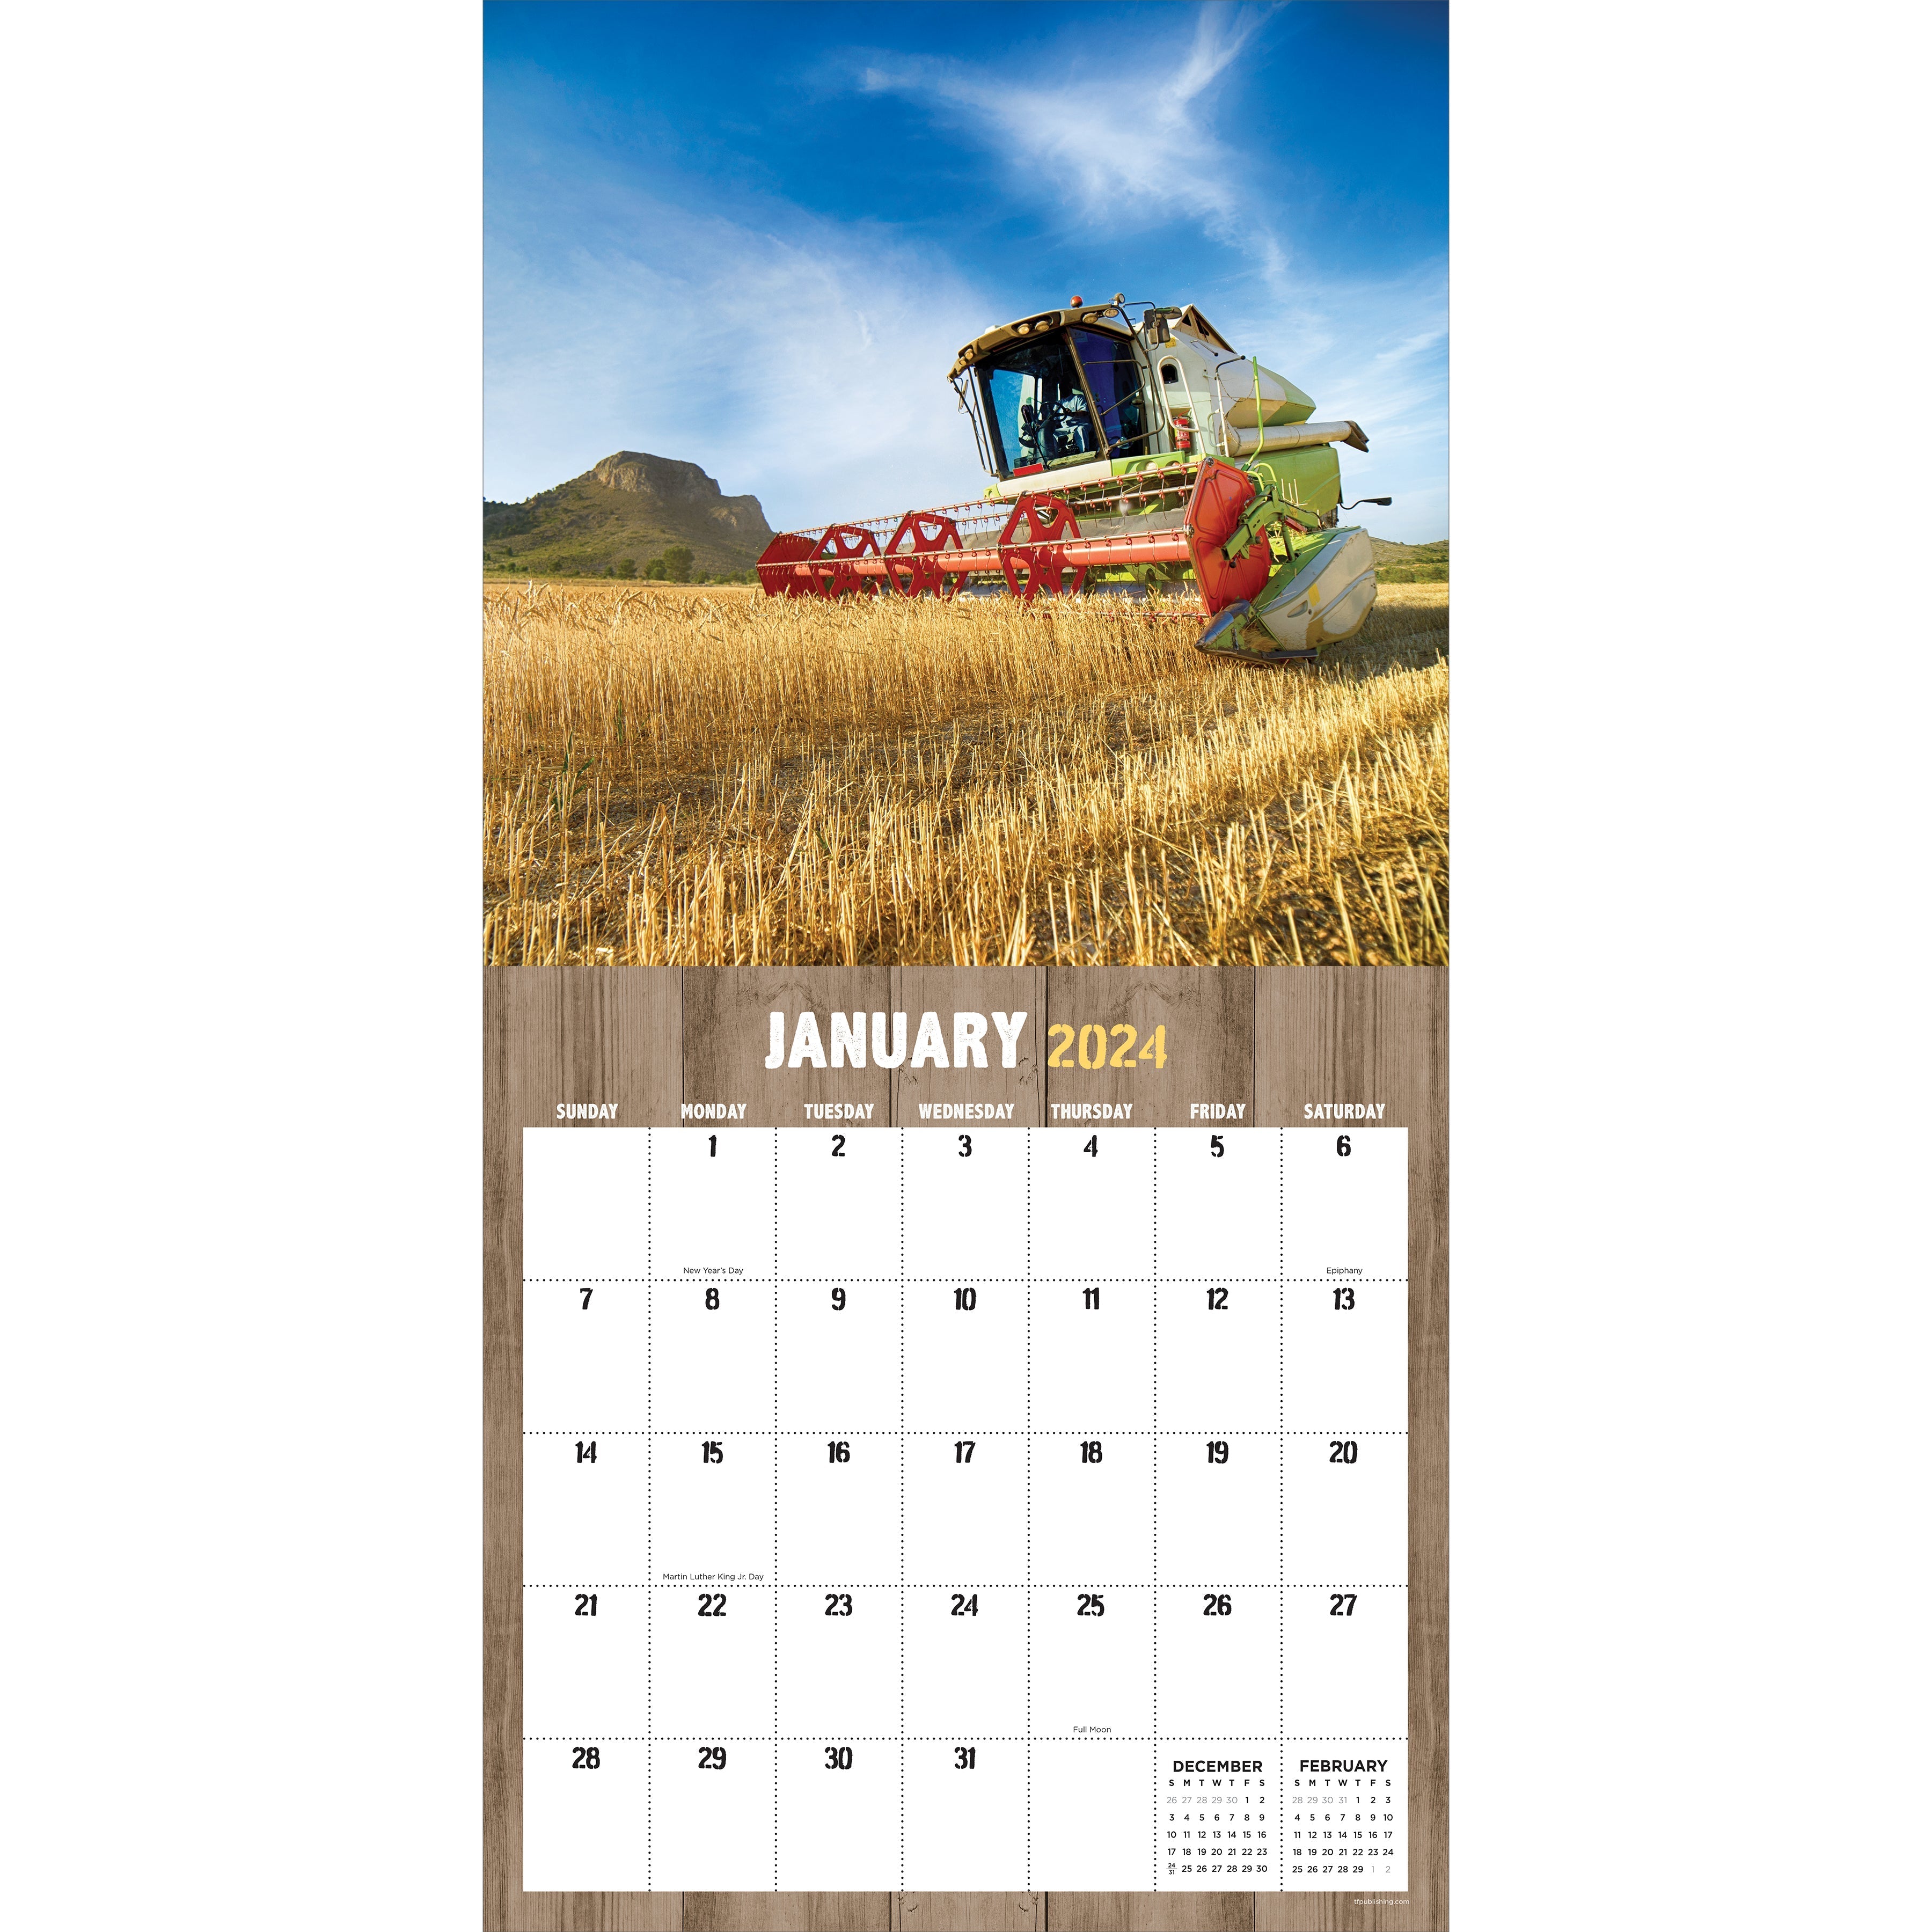 2024 Tractors & Farm Life - Square Wall Calendar US